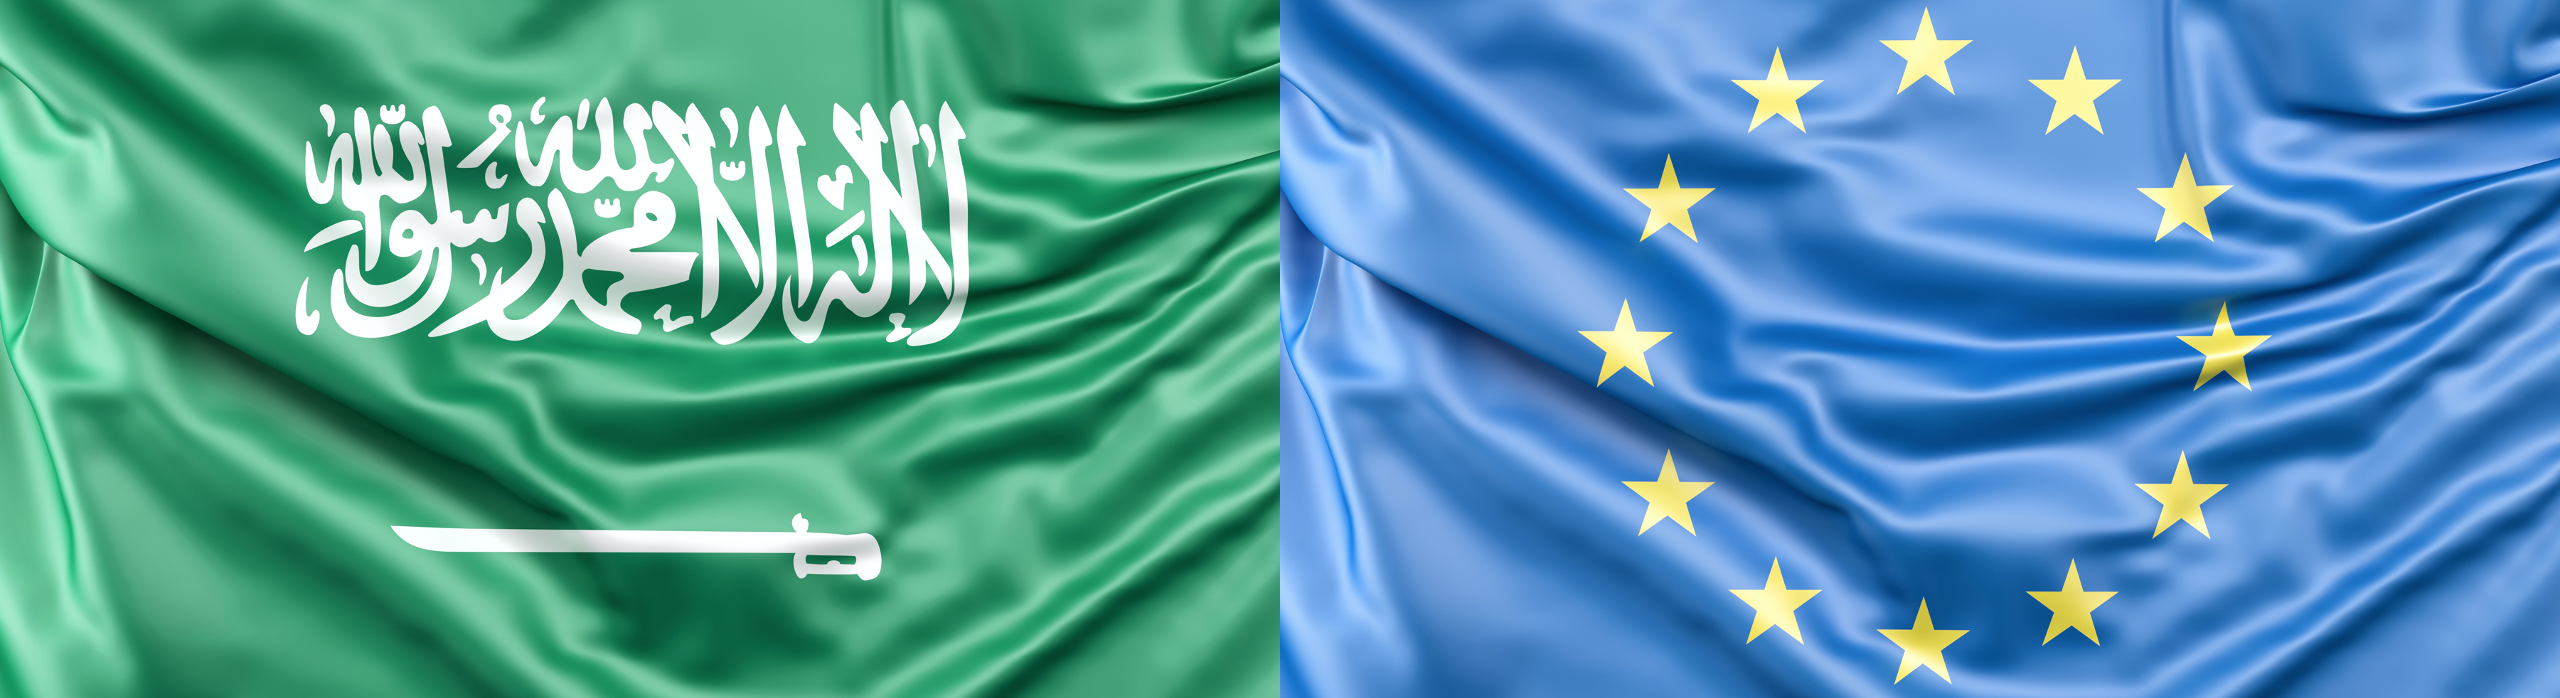 Europäisch saudische Beziehungen Interesse strategische Gefahr العلاقات السعودية الأوروبية مصالح مشتركة أم خطر إستراتيجي؟